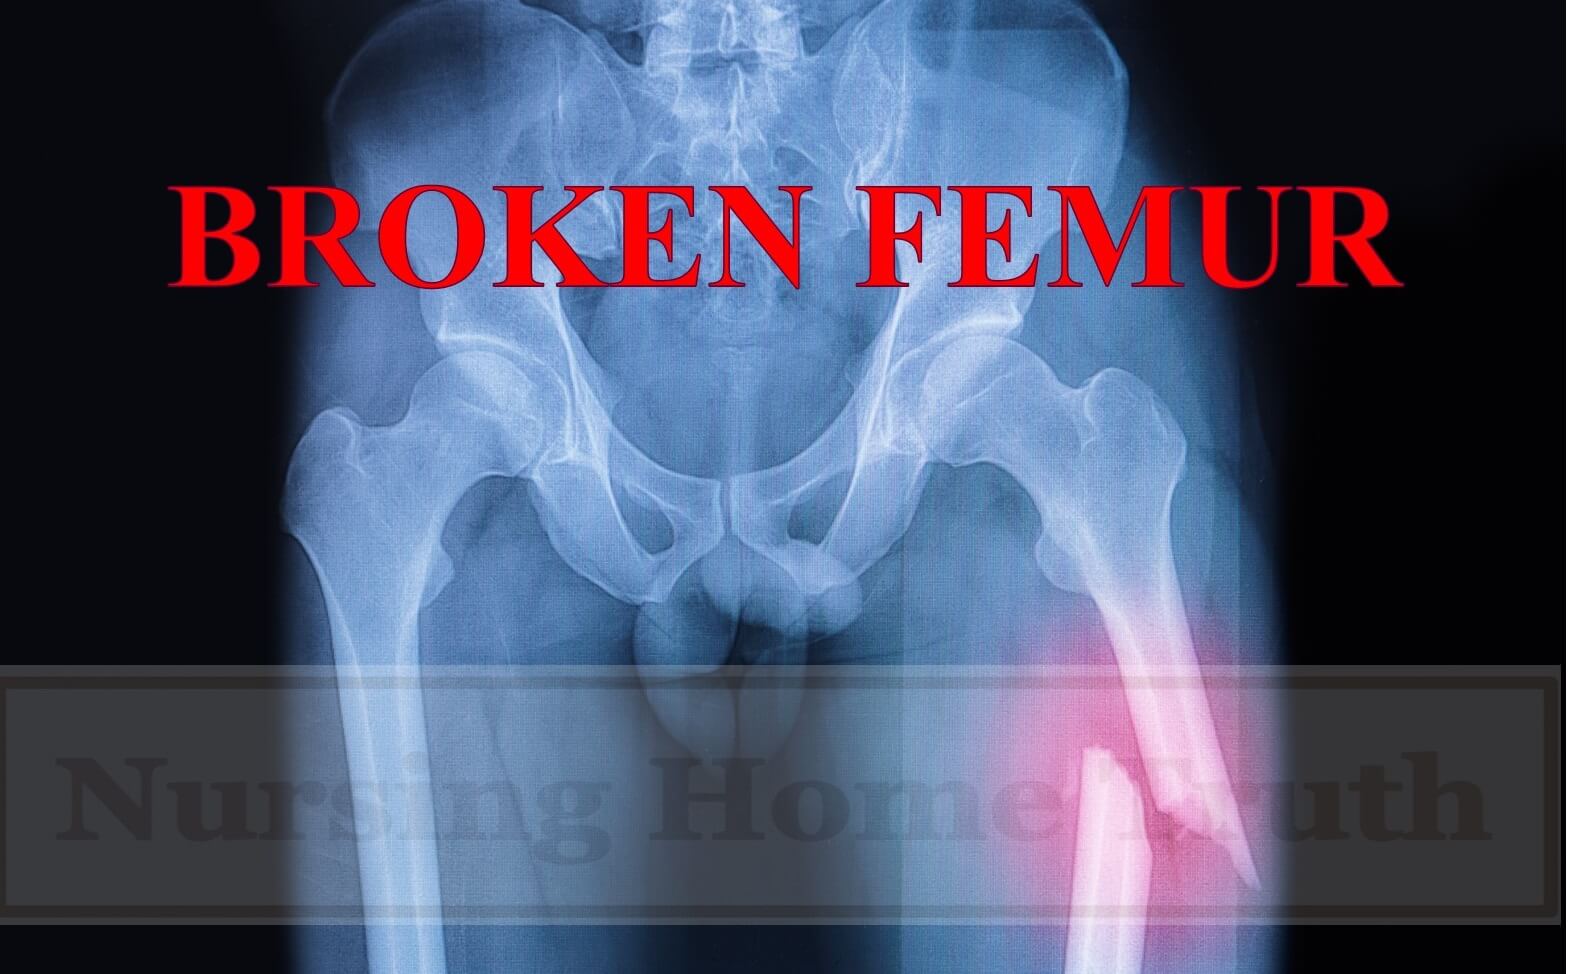 Broken Femur